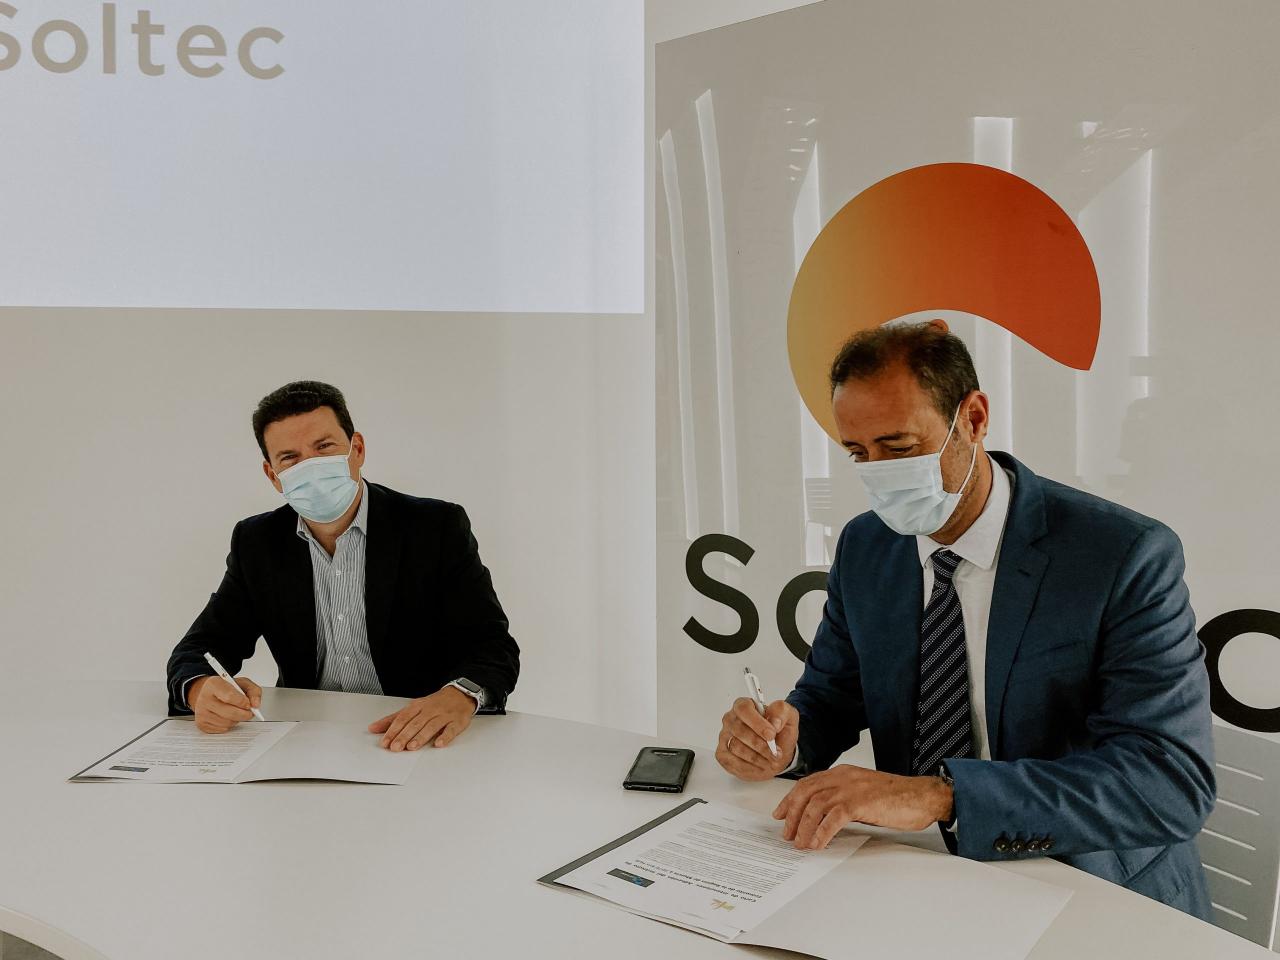 Soltec加入1070公里枢纽平台 推动能源创新